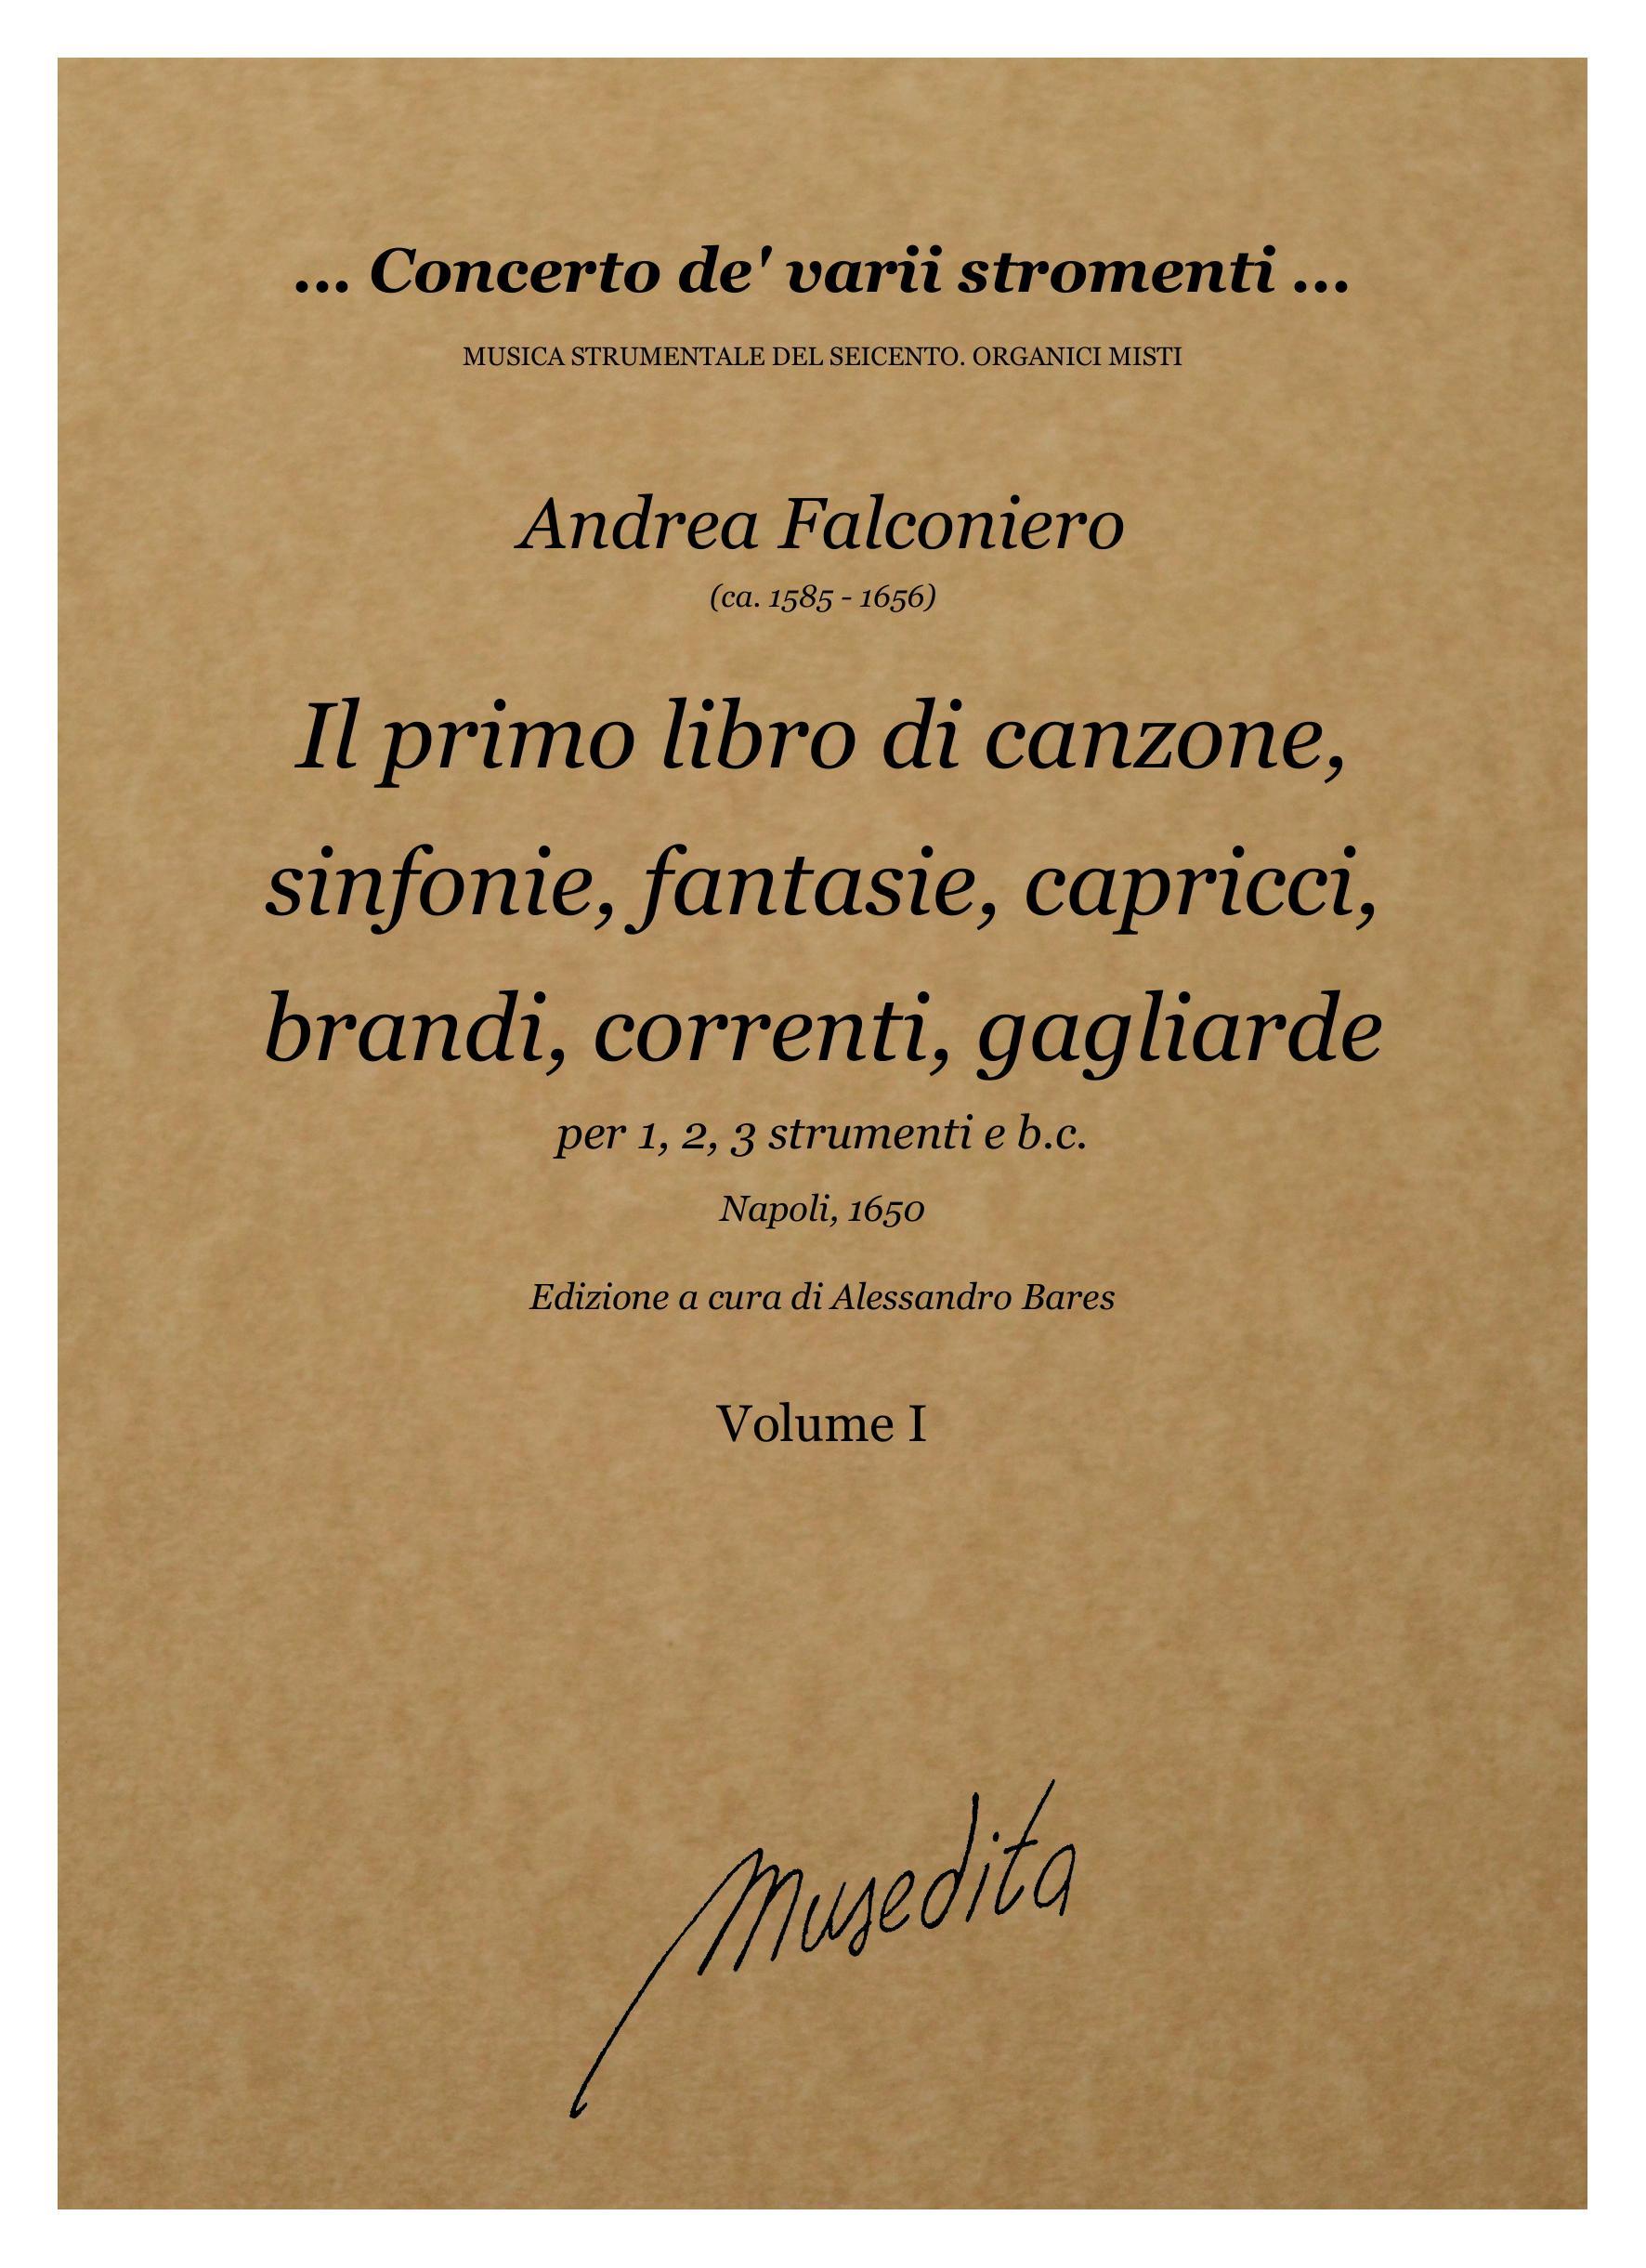 A.Falconiero: Il primo libro di canzone, sinfonie, fantasie, capricci, brandi, correnti, gagliarde,